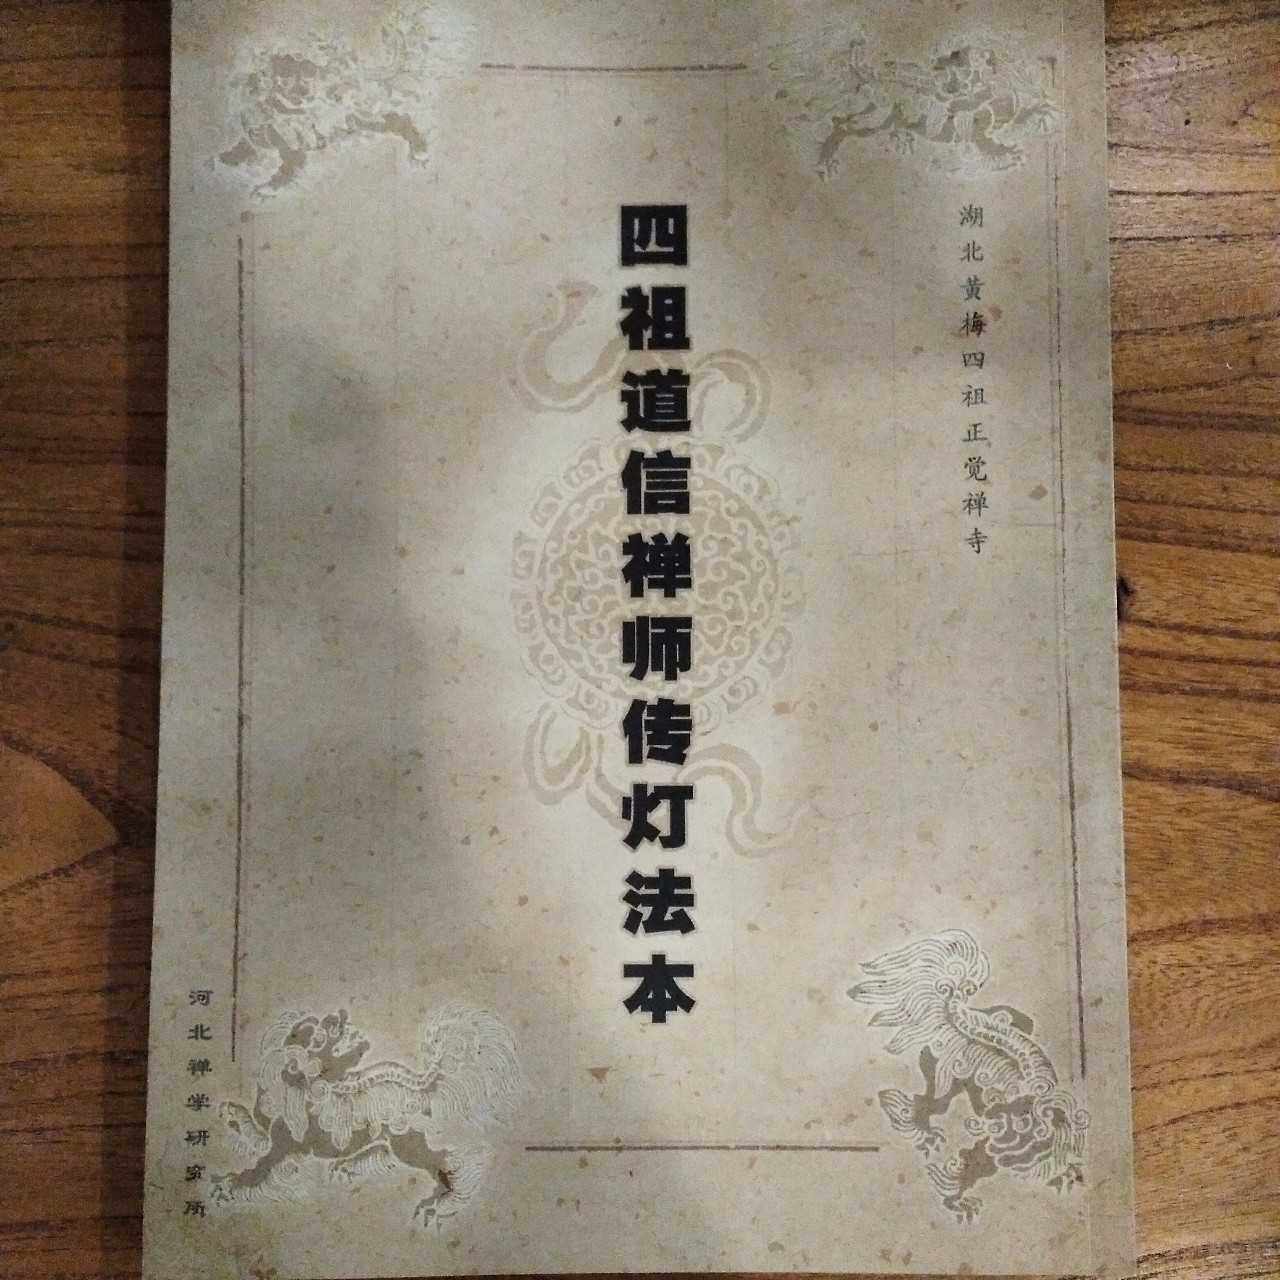 【每周一书】《四祖道信禅师传灯法本》